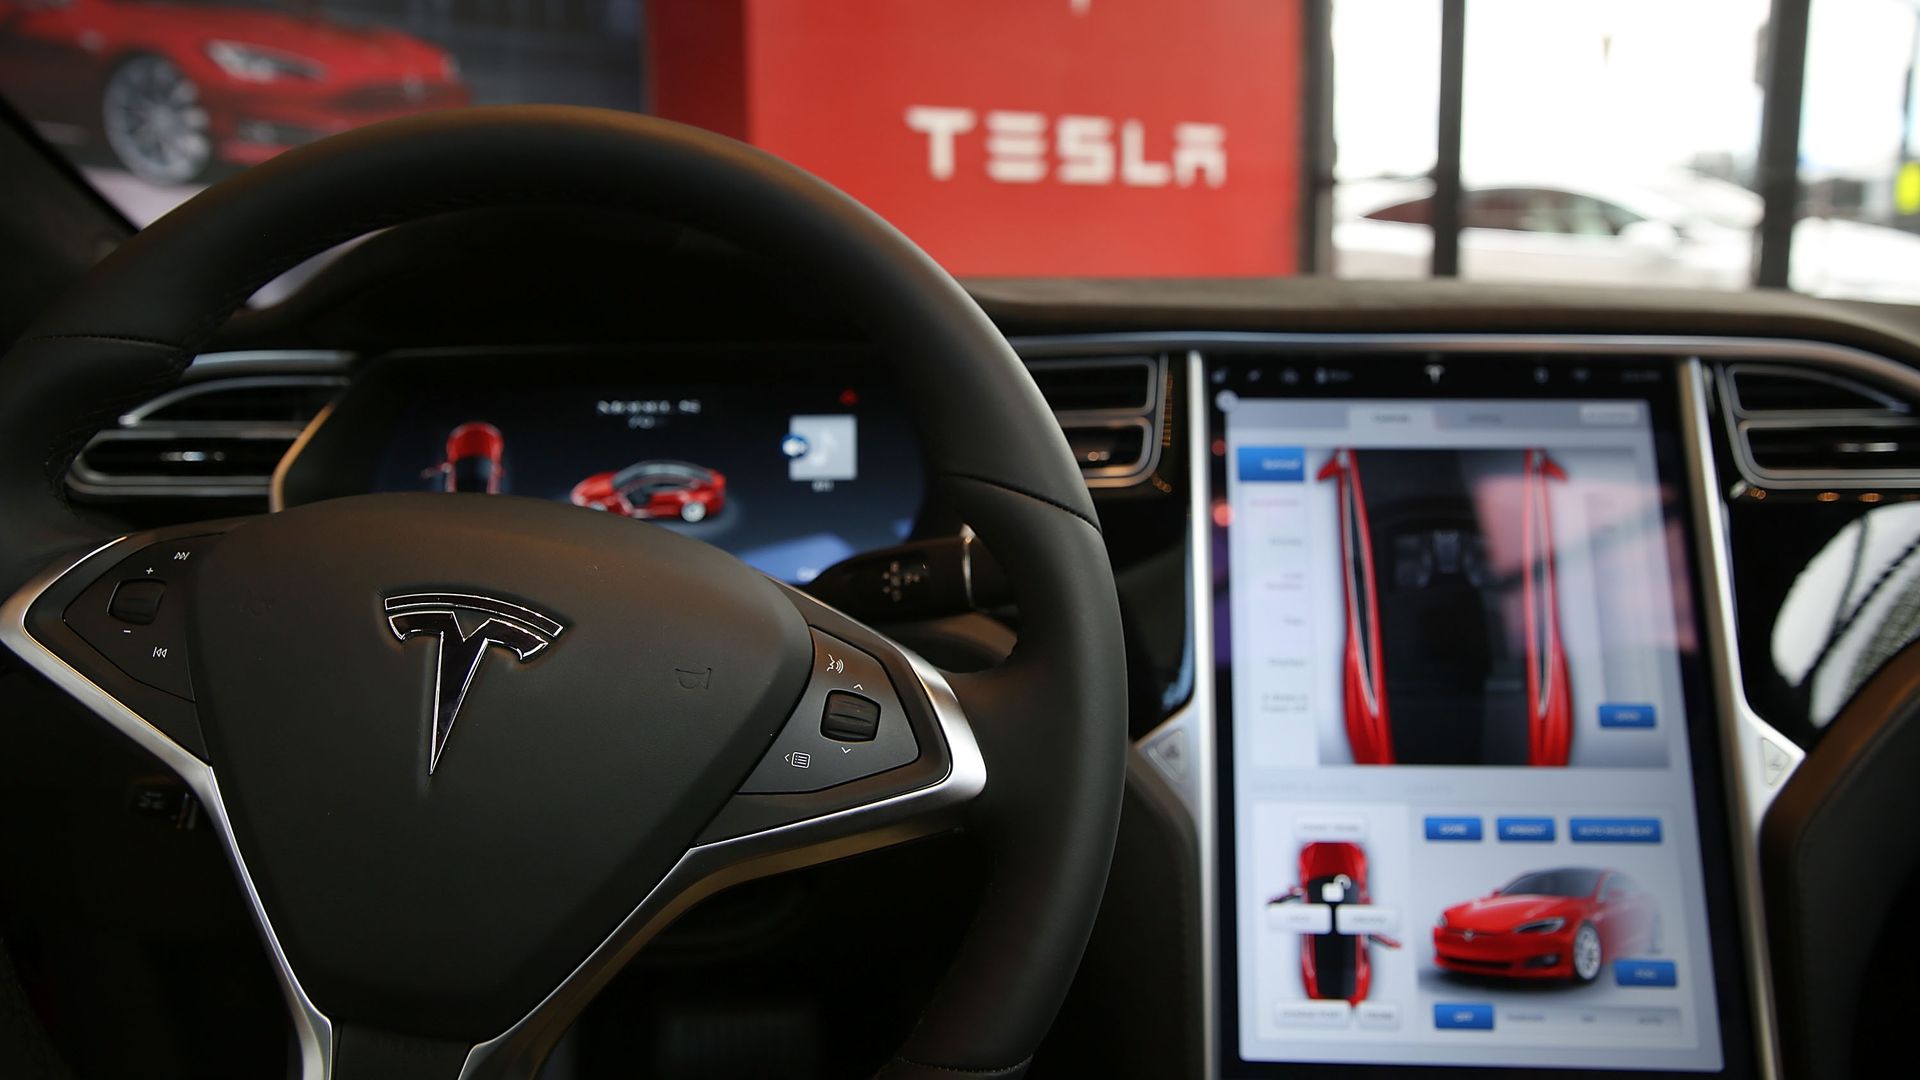 Steering wheel and dashboard display of a Tesla